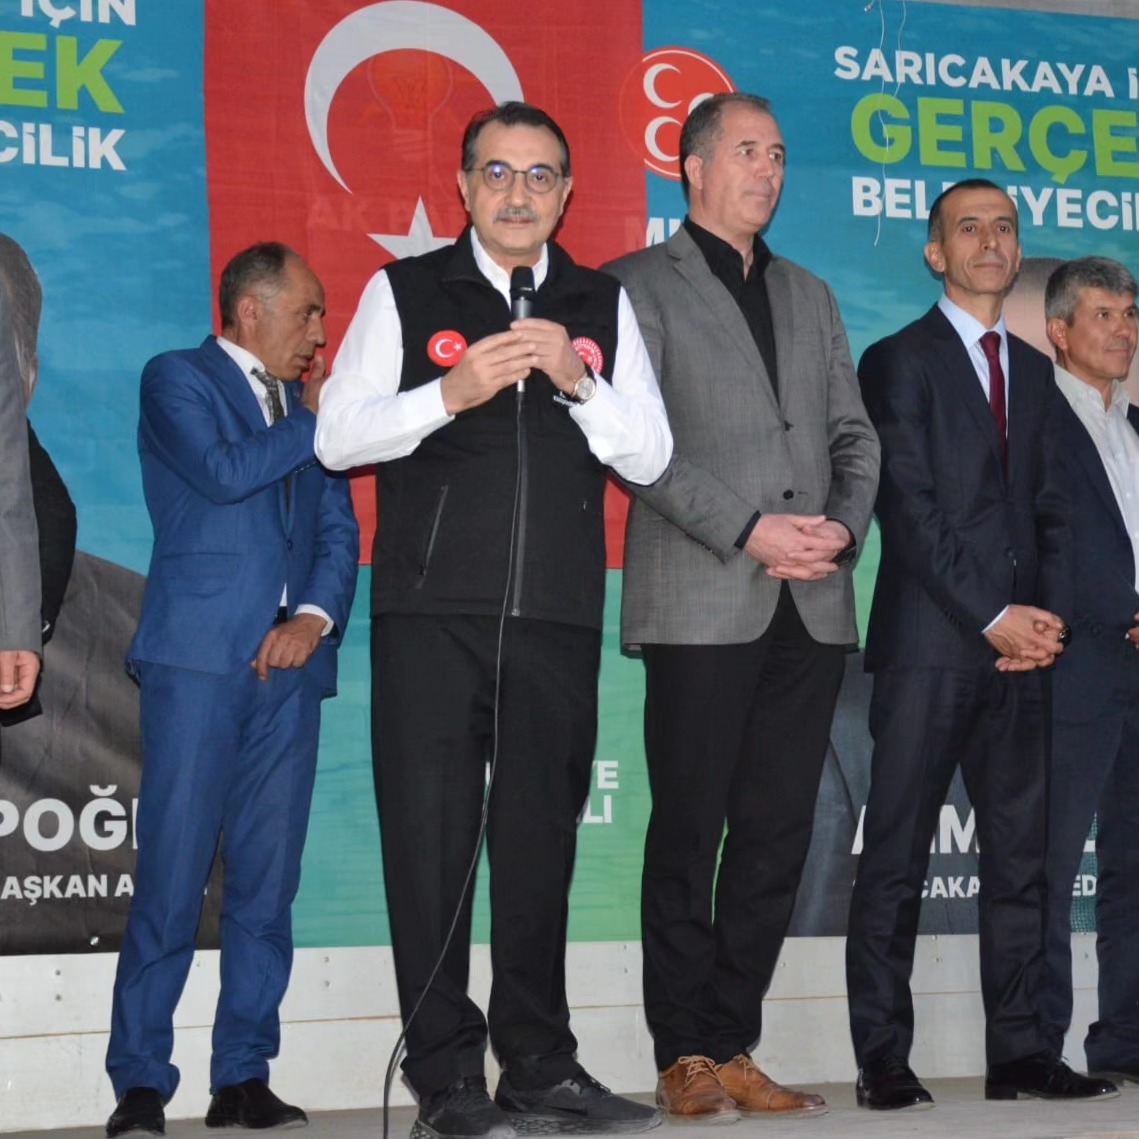 Enerji ve Tabii Kaynaklar Bakanı Fatih Dönmez, Sarıcakaya'da iftar programına katıldı ve yerel kalkınmanın önemini vurguladı